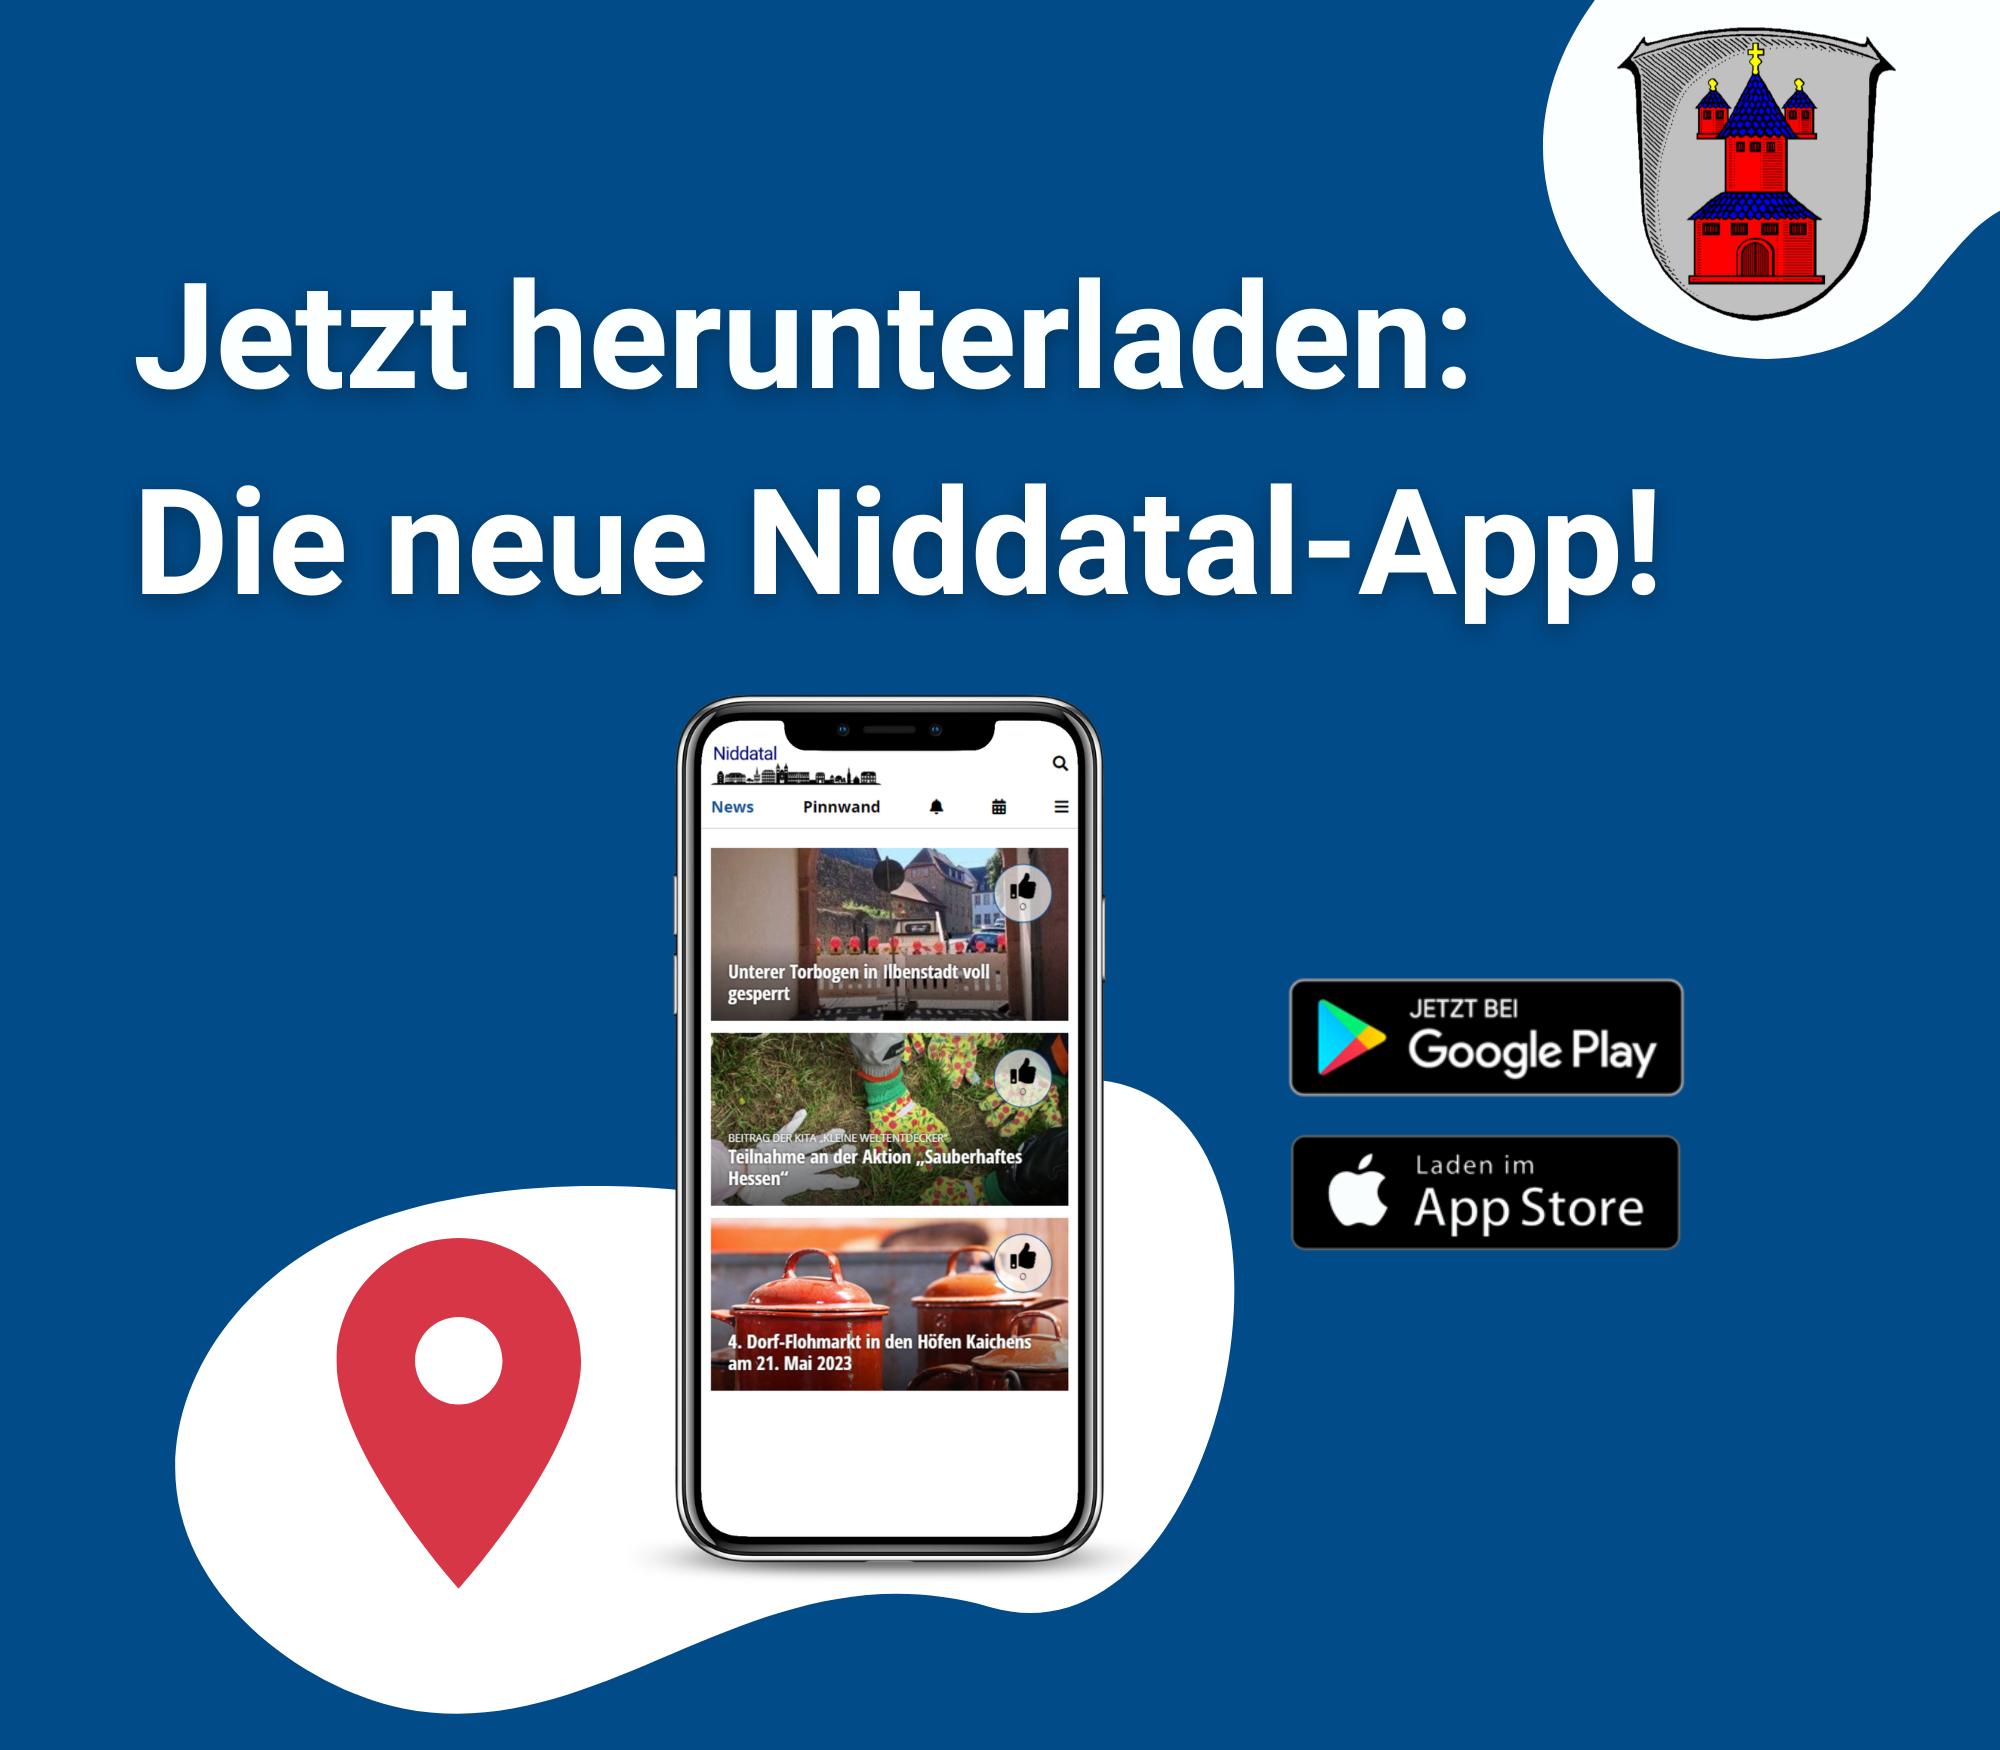 Start frei für unsere neue Niddatal-App!